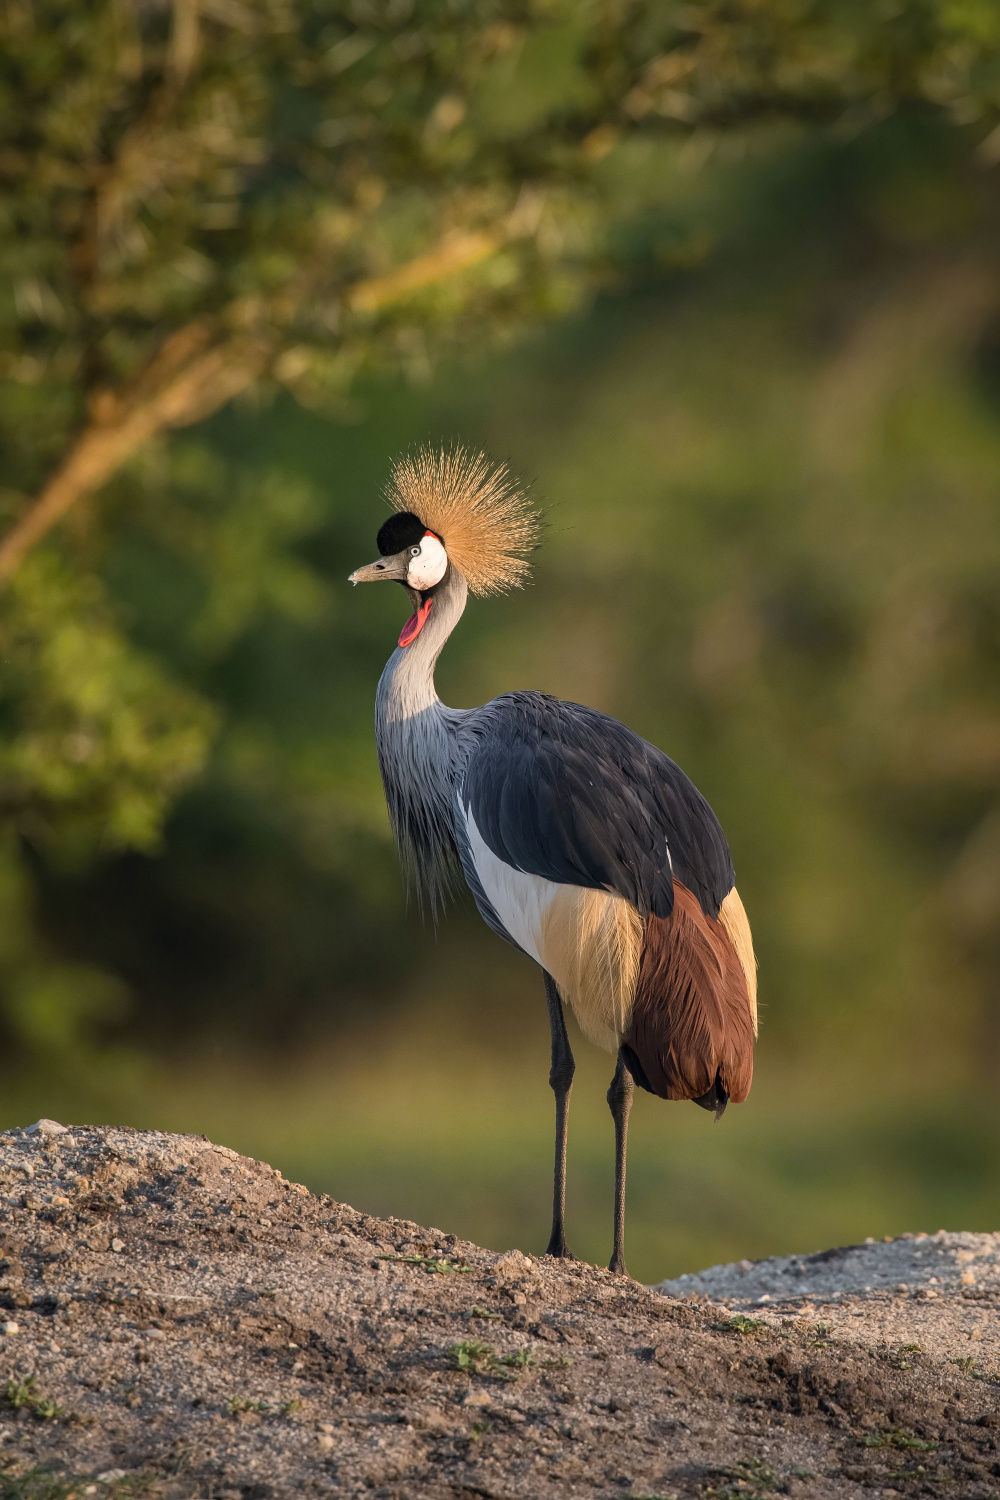 jeřáb královský (Balearica regulorum) Grey crowned crane